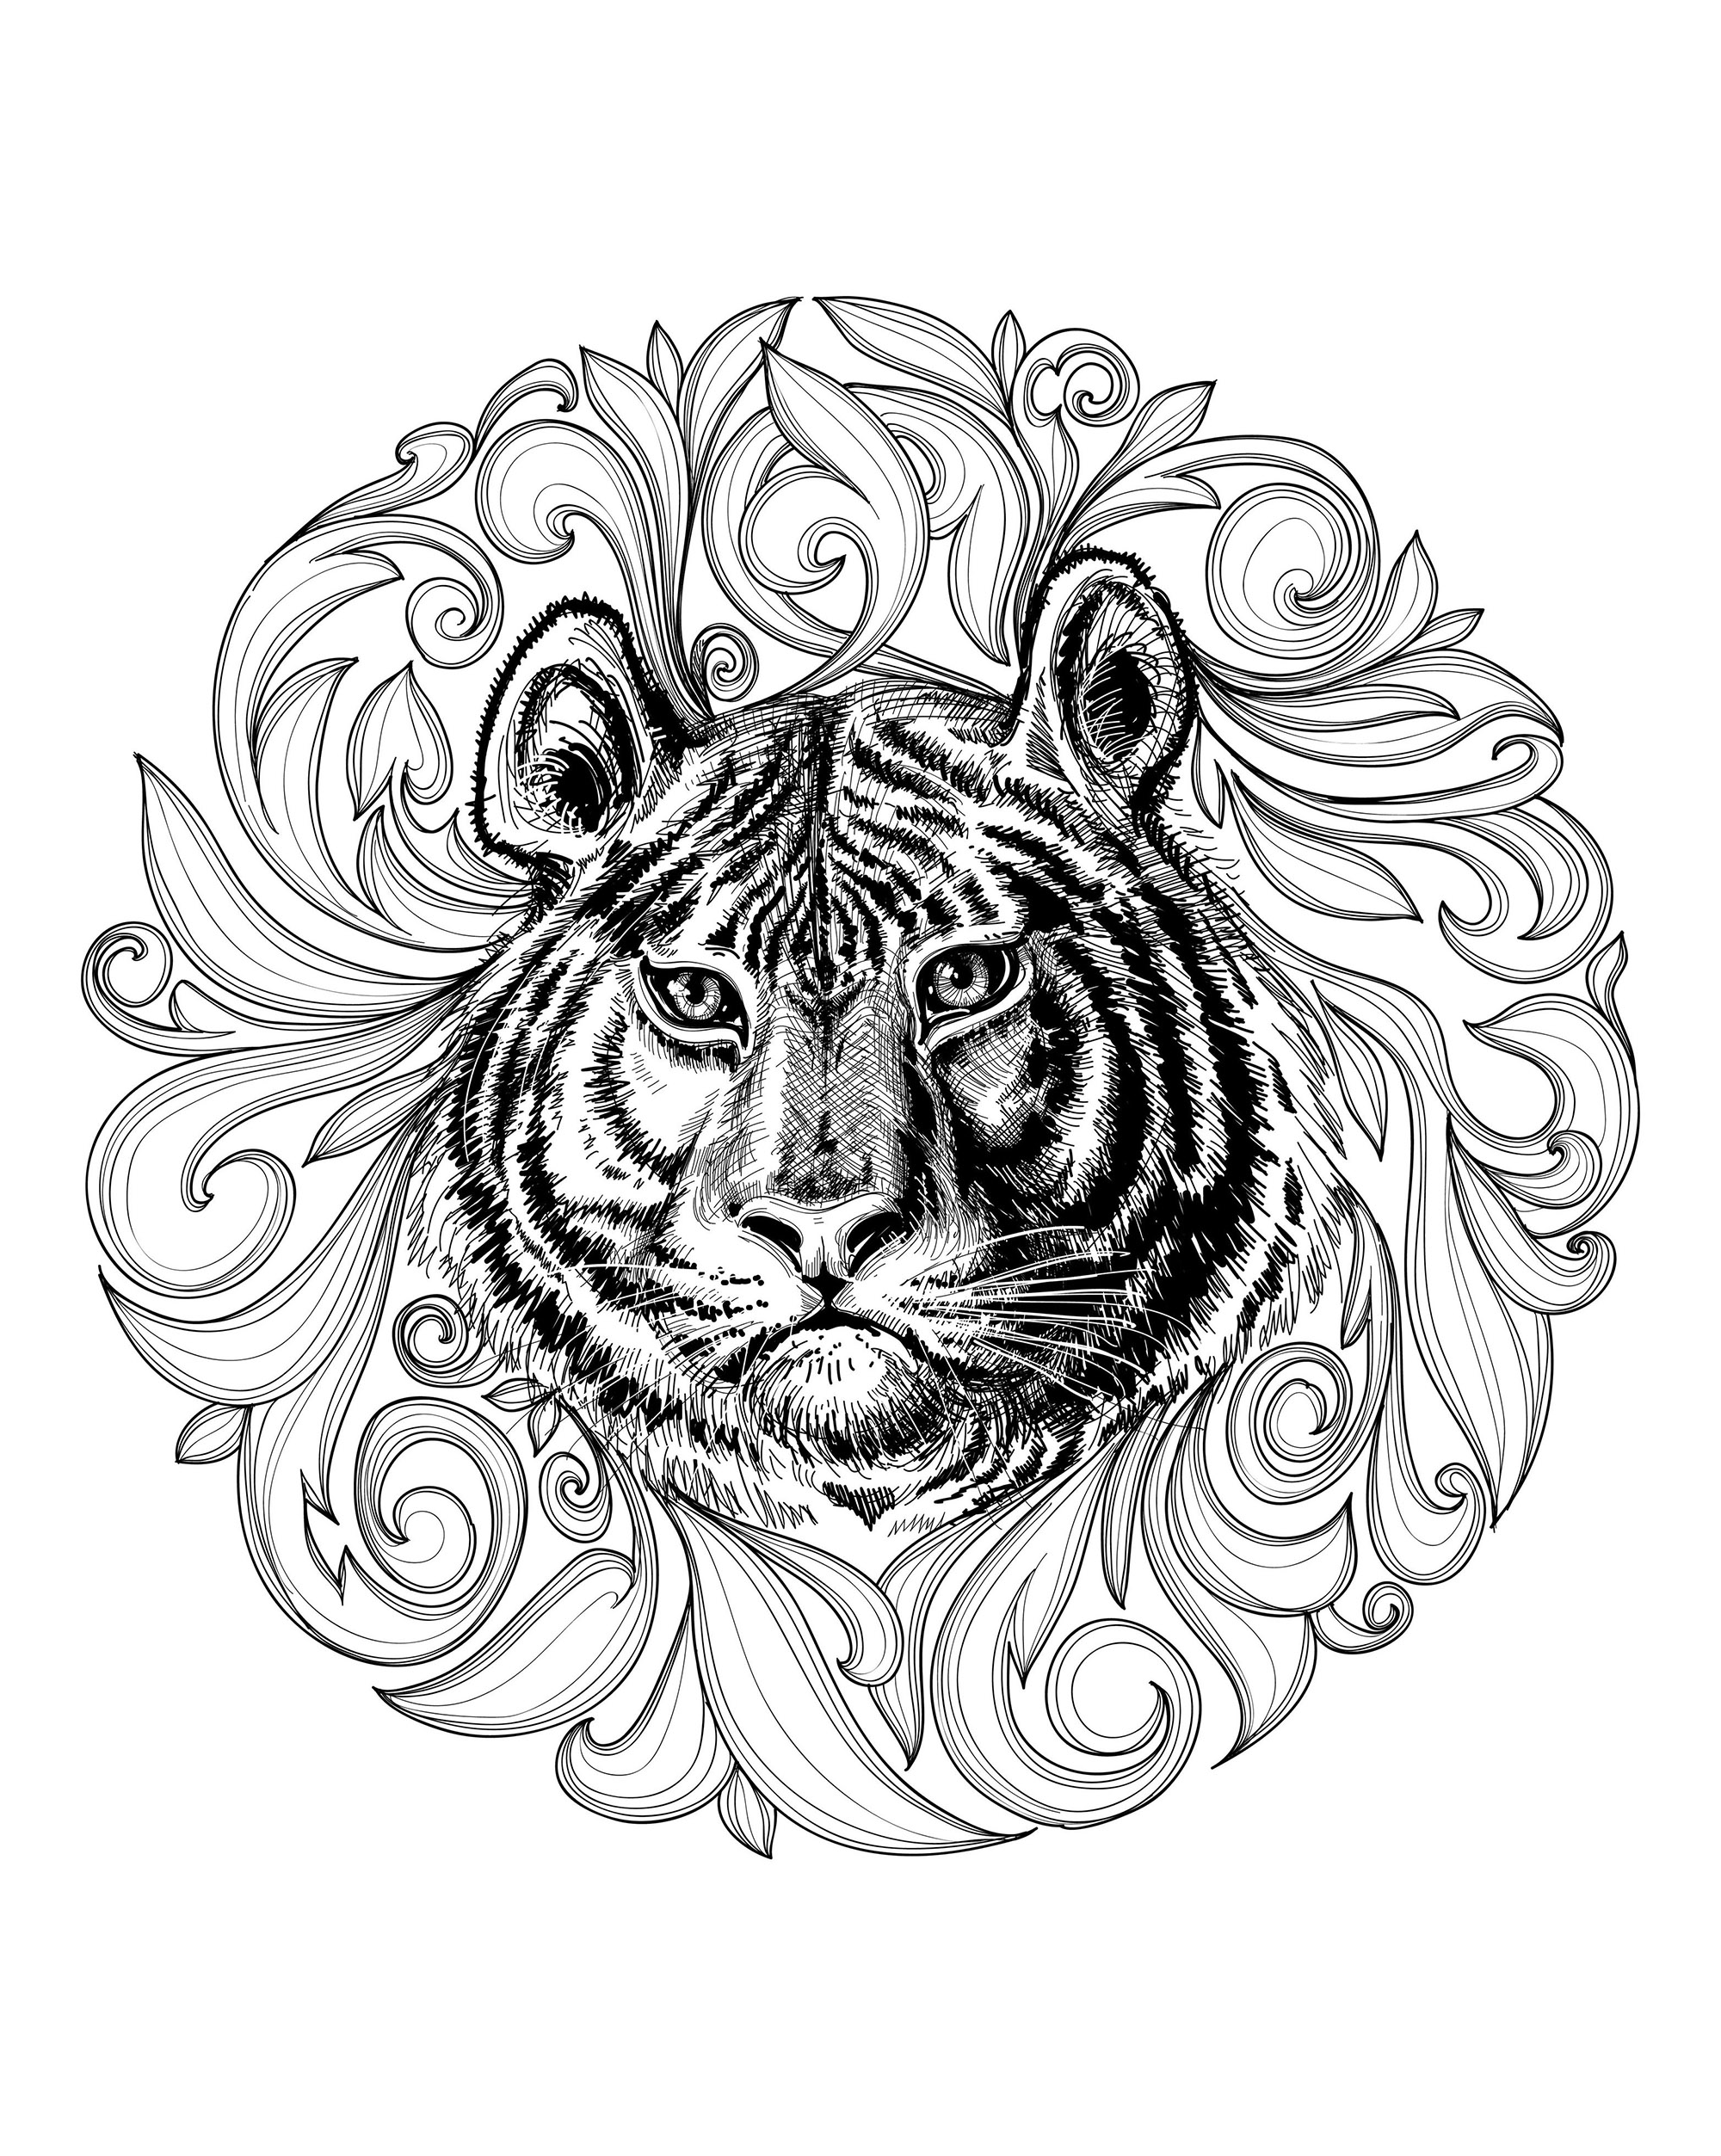 Disegni da colorare per adulti : Tigri - 2, Artista : torky #NOLINK   Fonte : 123rf